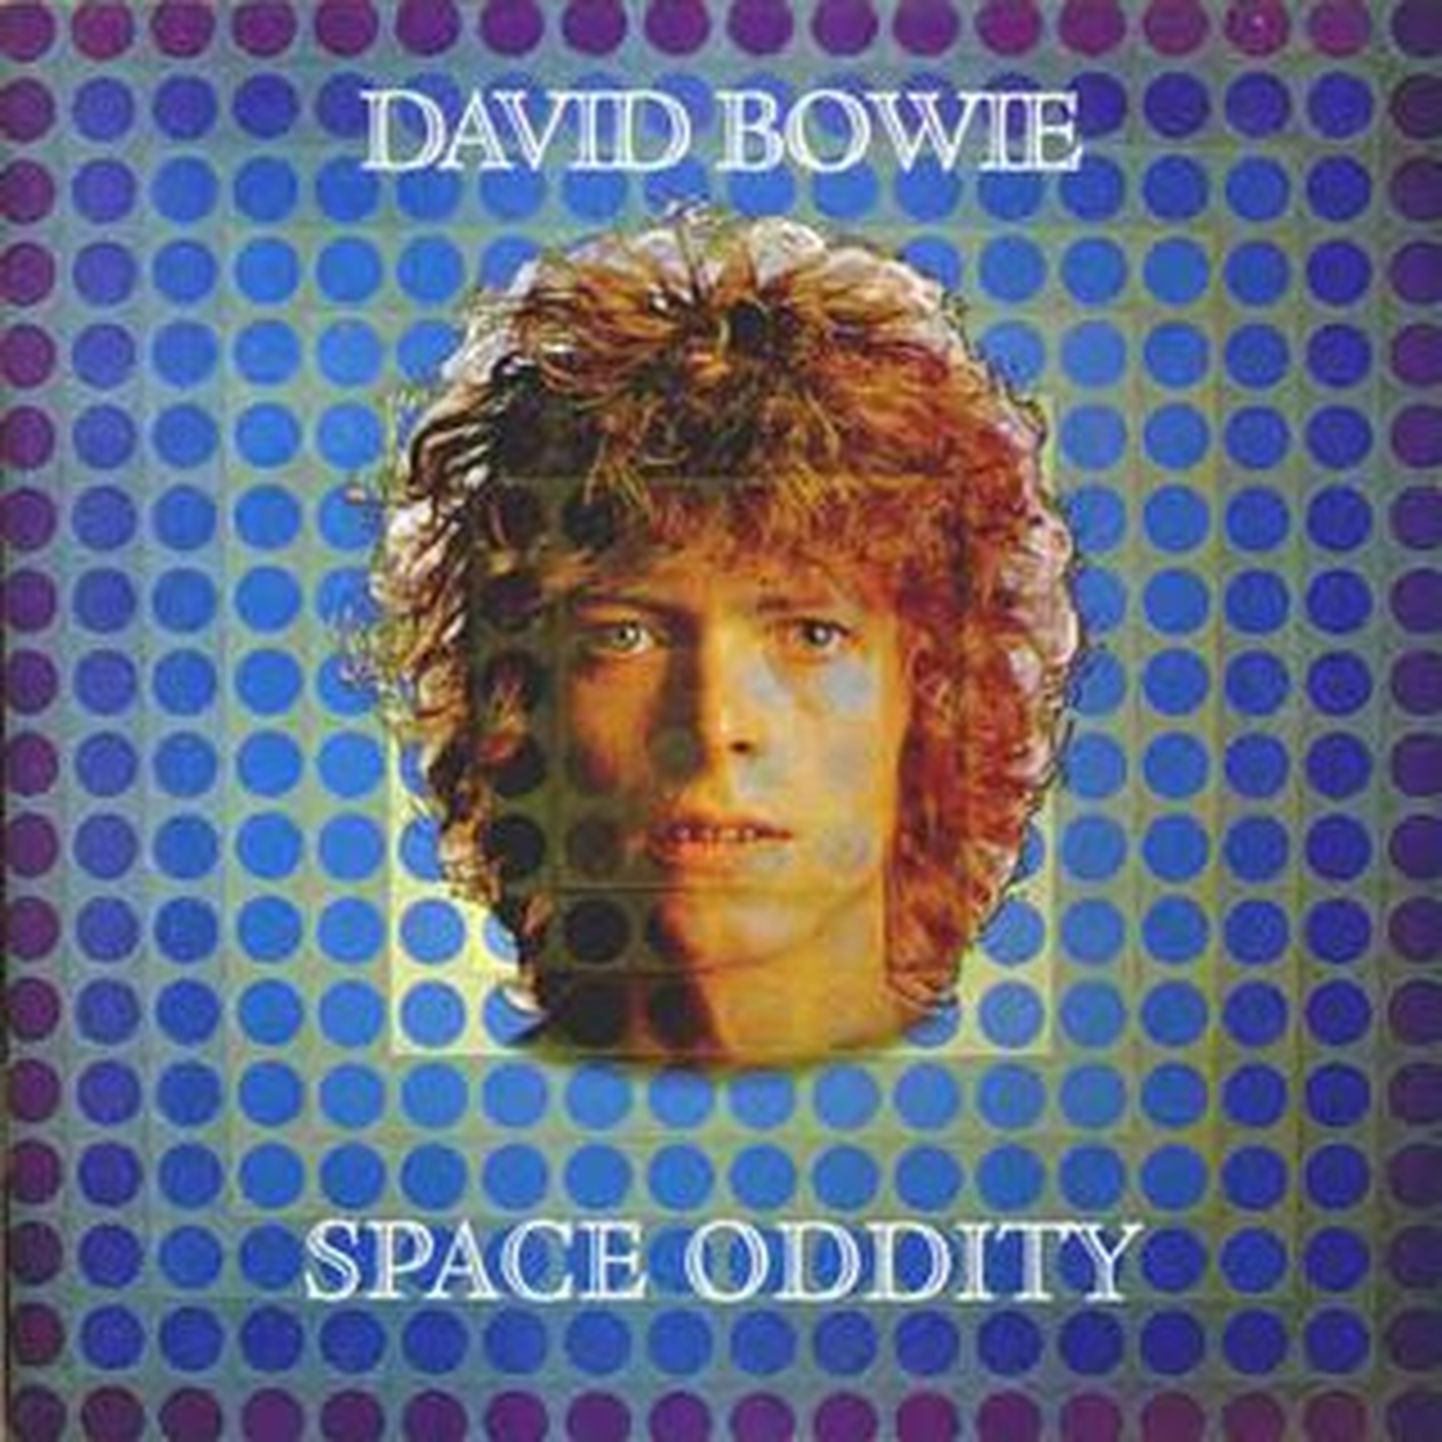 David Bowie “Space Oddity”.